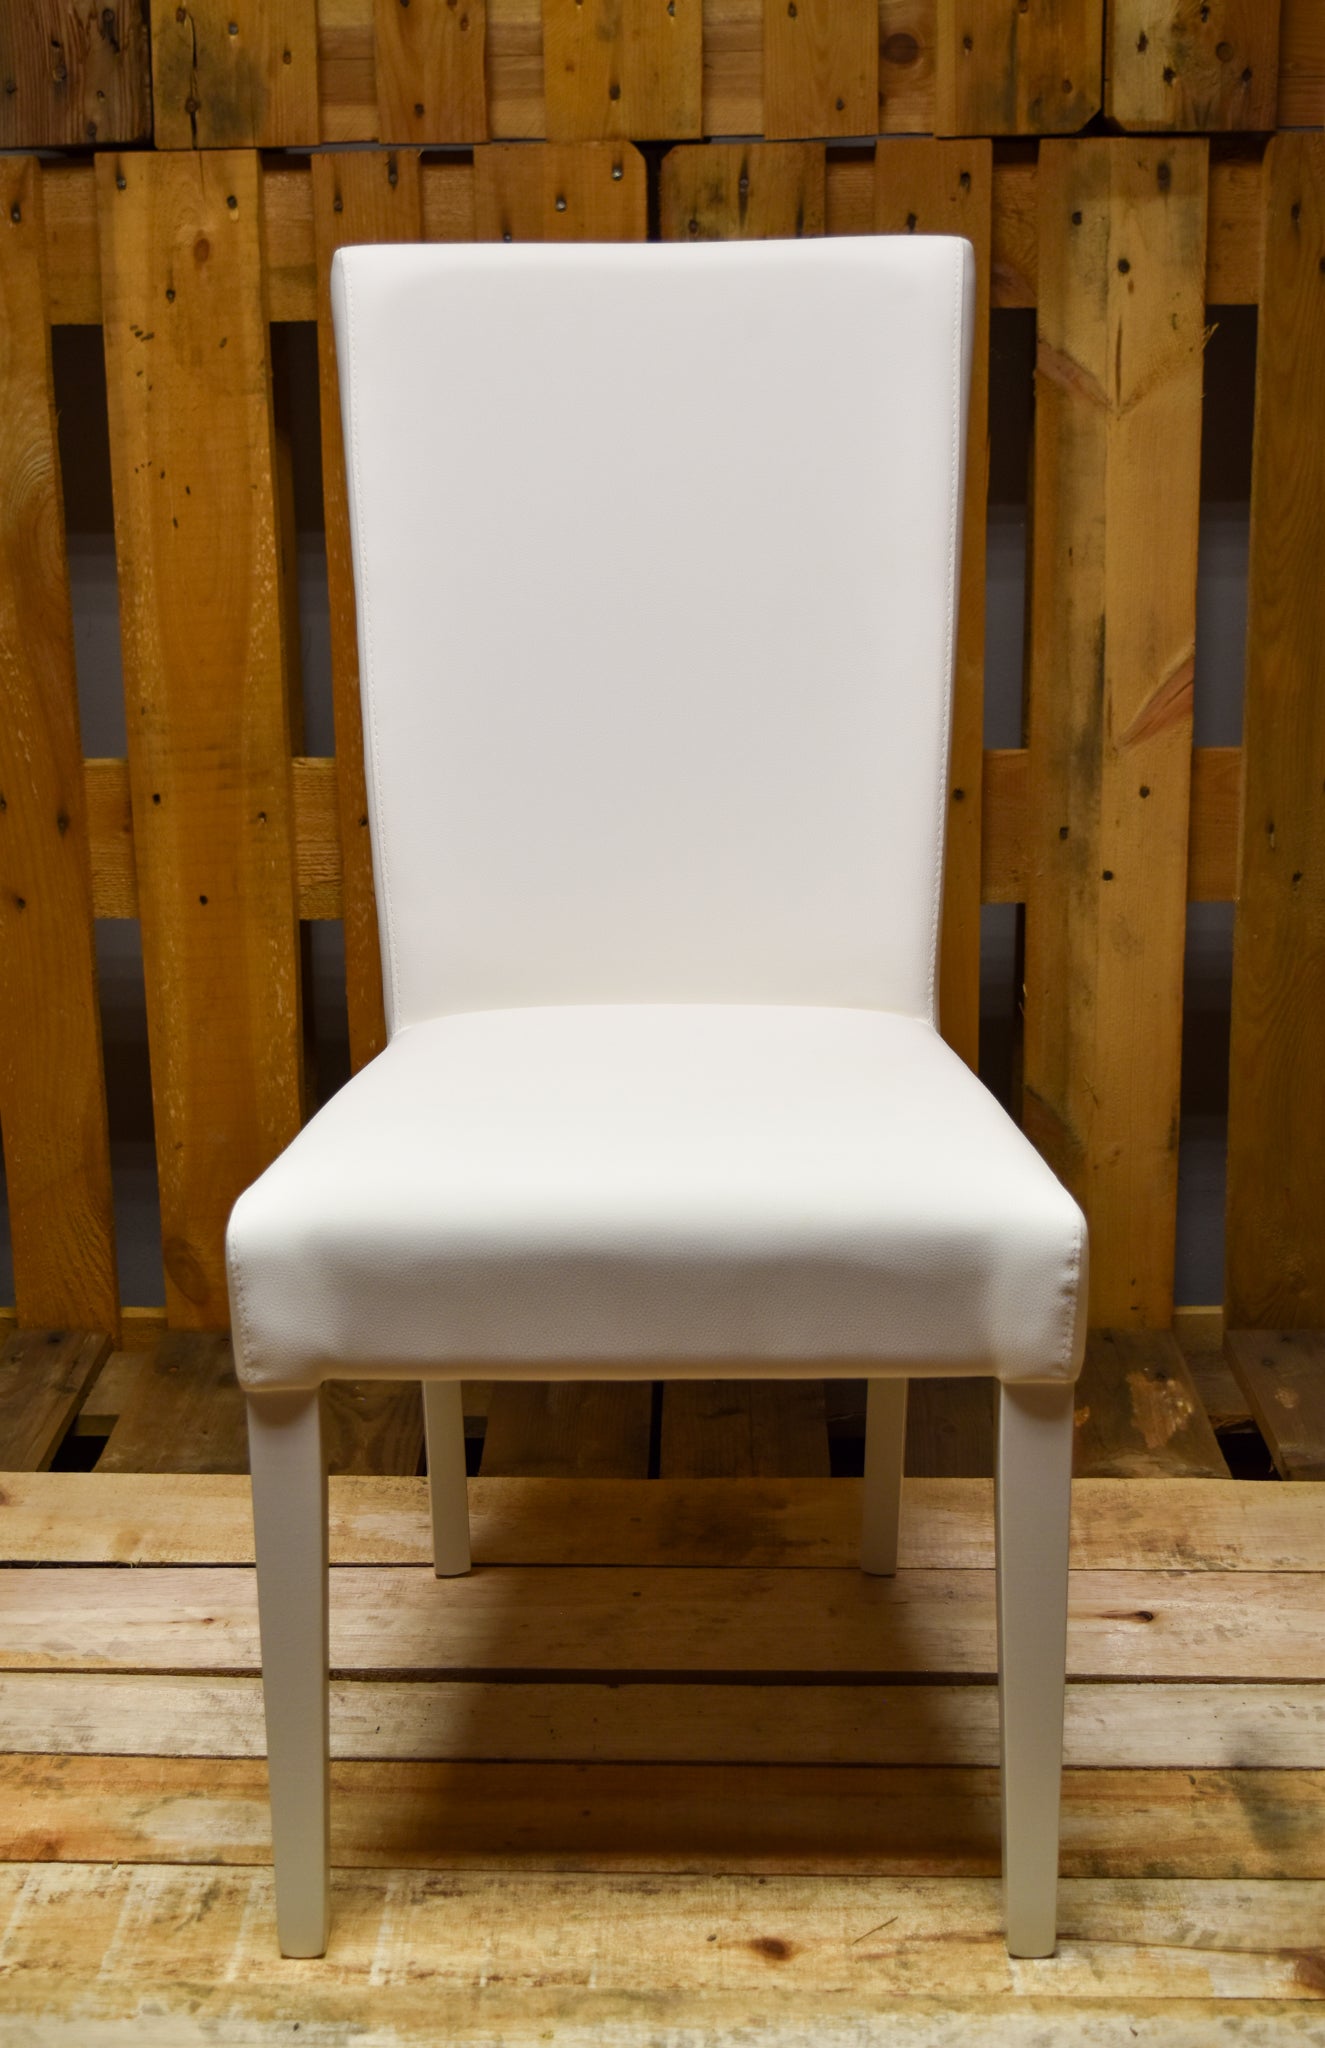 Stock sedie outlet modello 46 imbottita finta pelle colore bianco